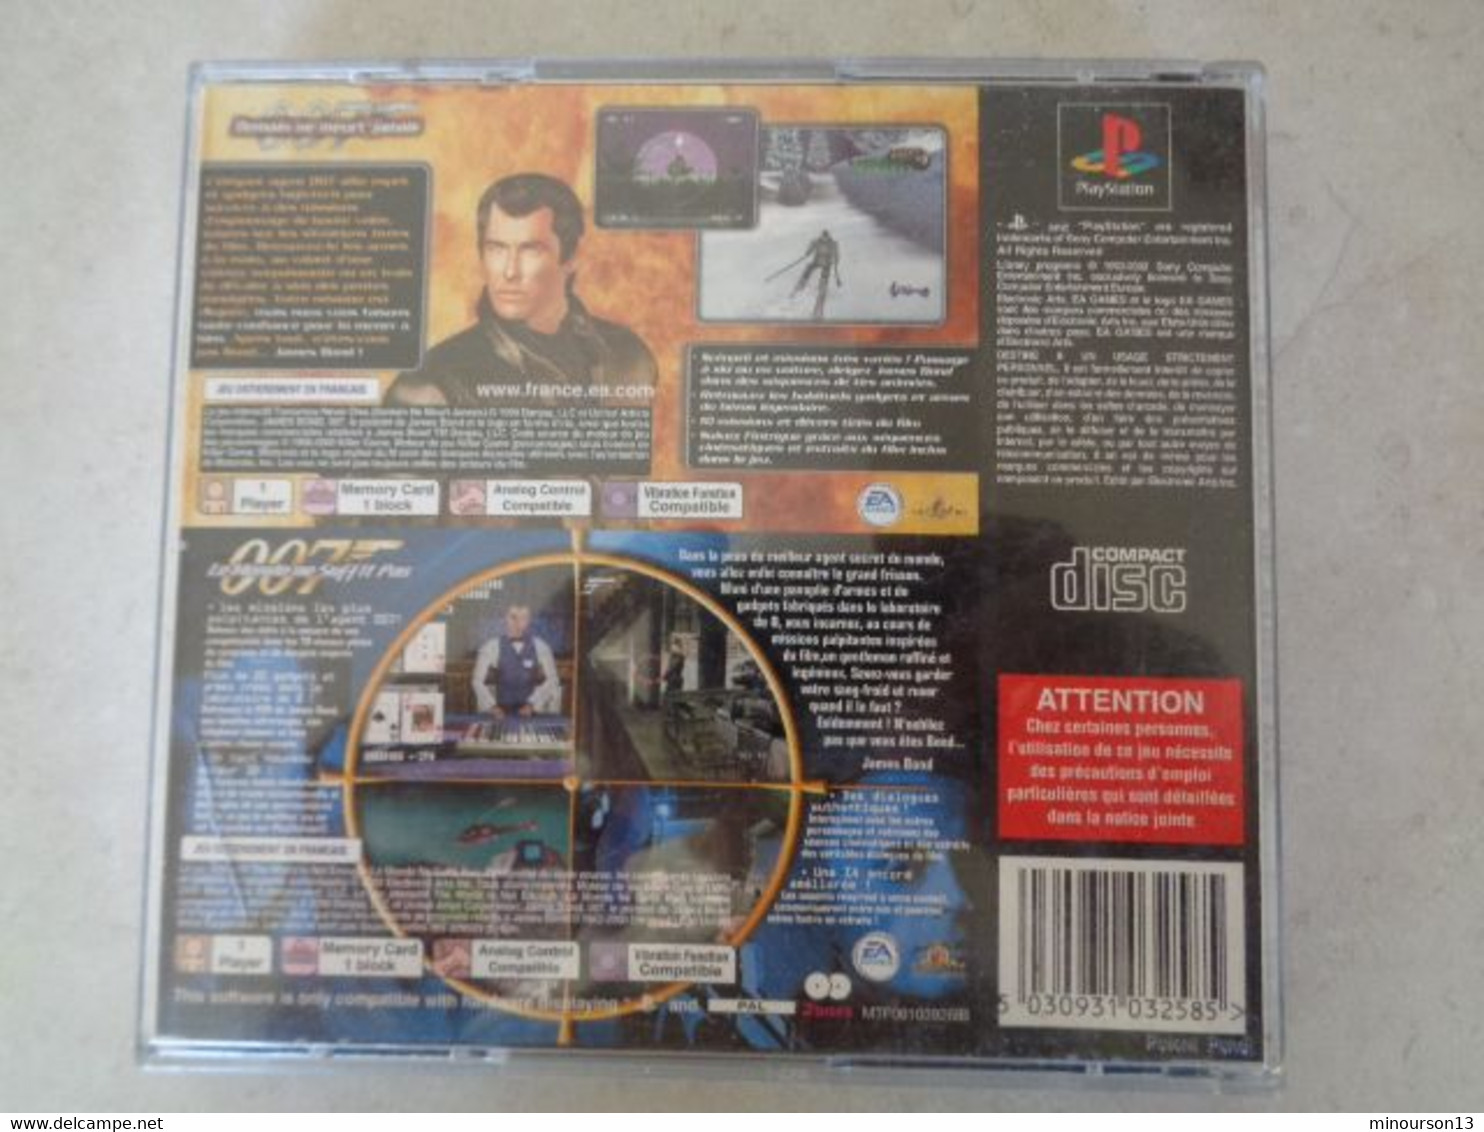 JEUX PLAYSTATION 1 - DISQUES NOIRS 2 JEUX 007 ( DEMAIN NE MEURT JAMAIS ET LE MONDE NE SUFFIT PAS ) AVEC NOTICE - Playstation 2